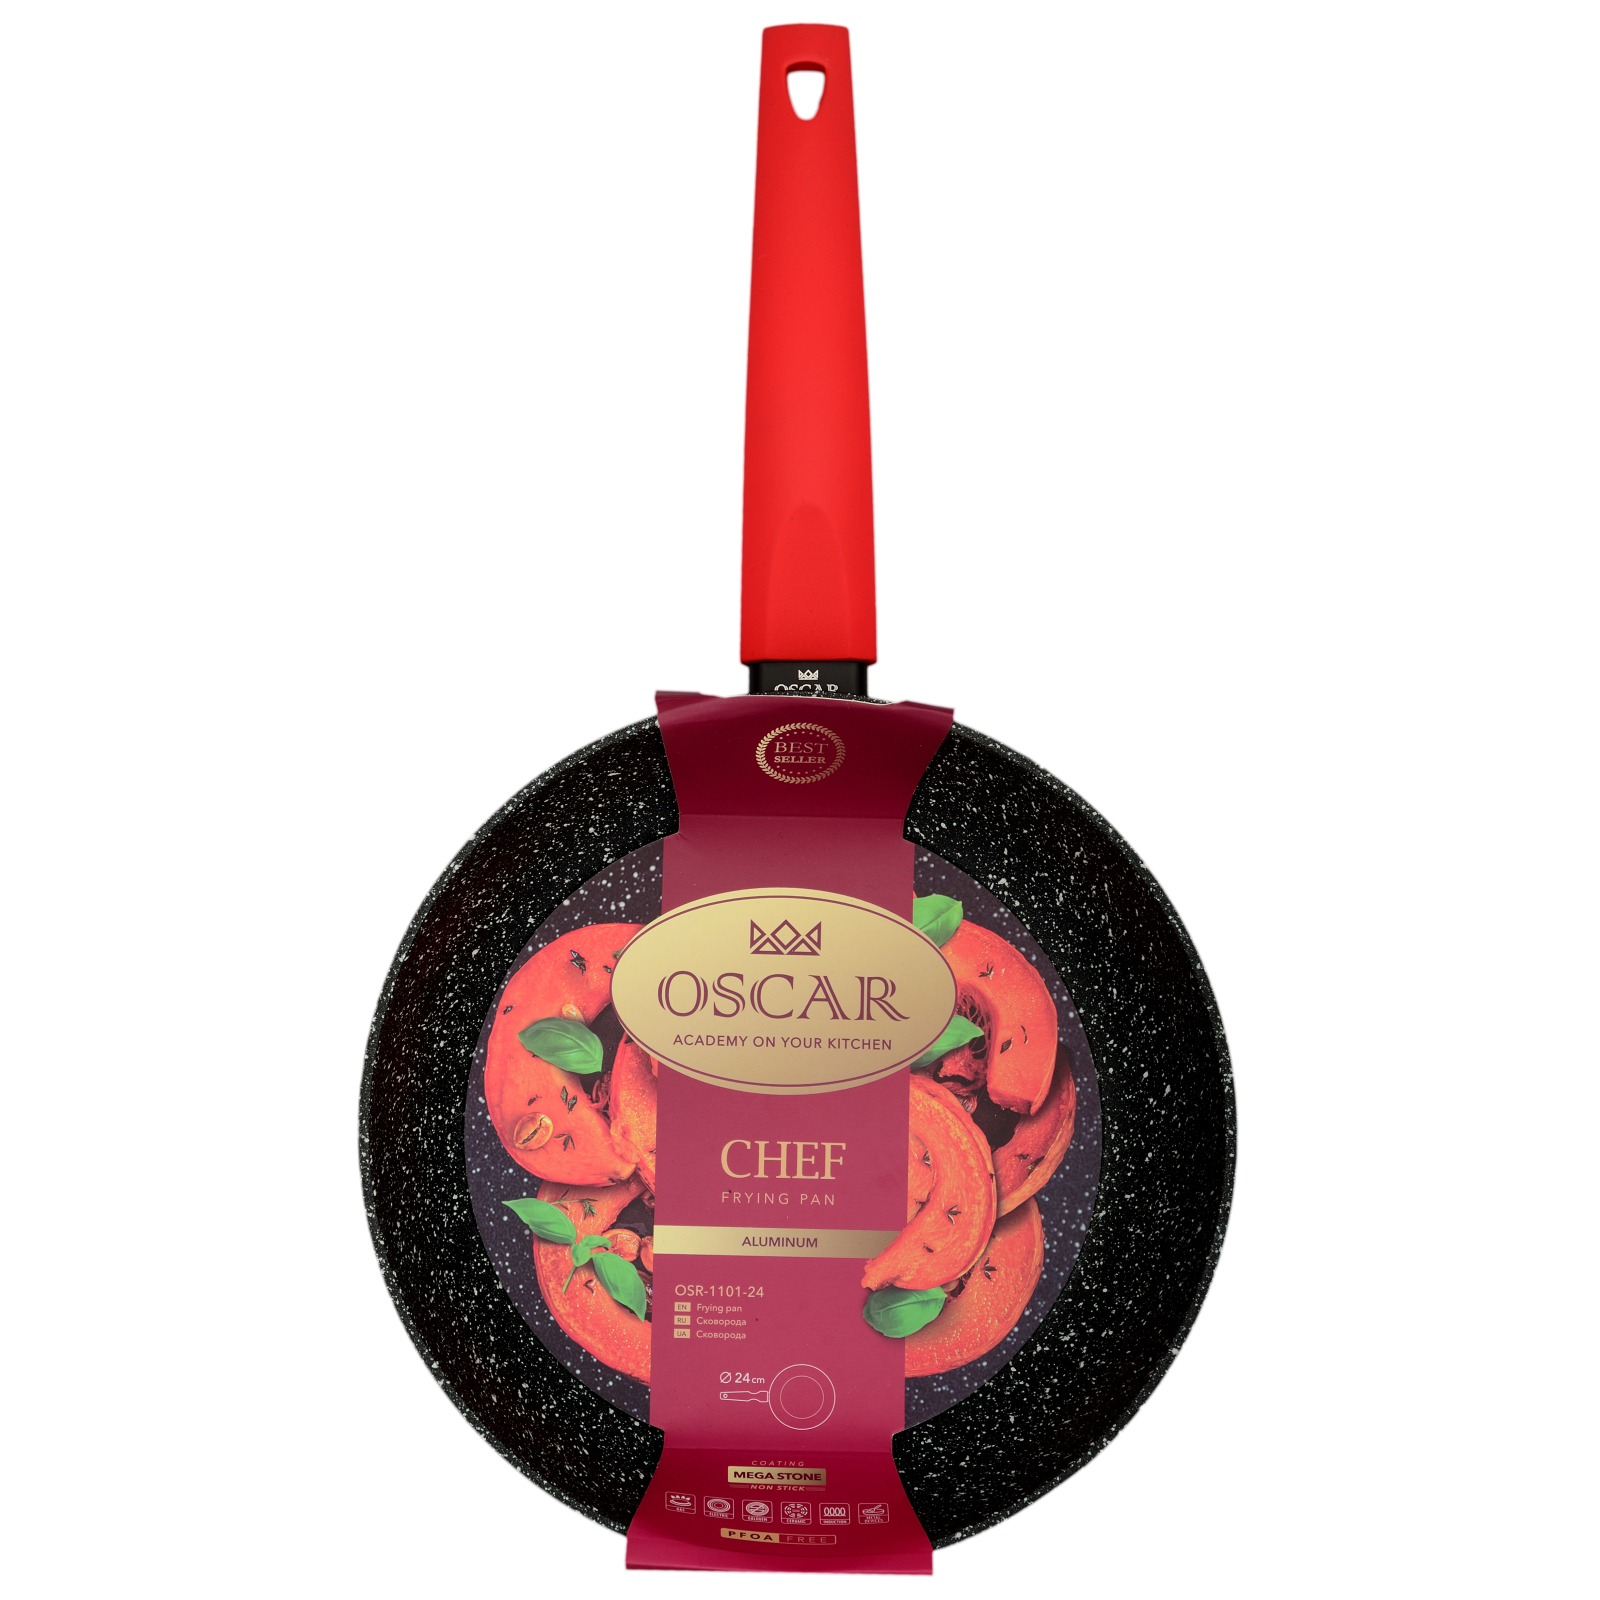 Сковорода Oscar Chef без кришки 20 см (OSR-1101-20) изображение 3